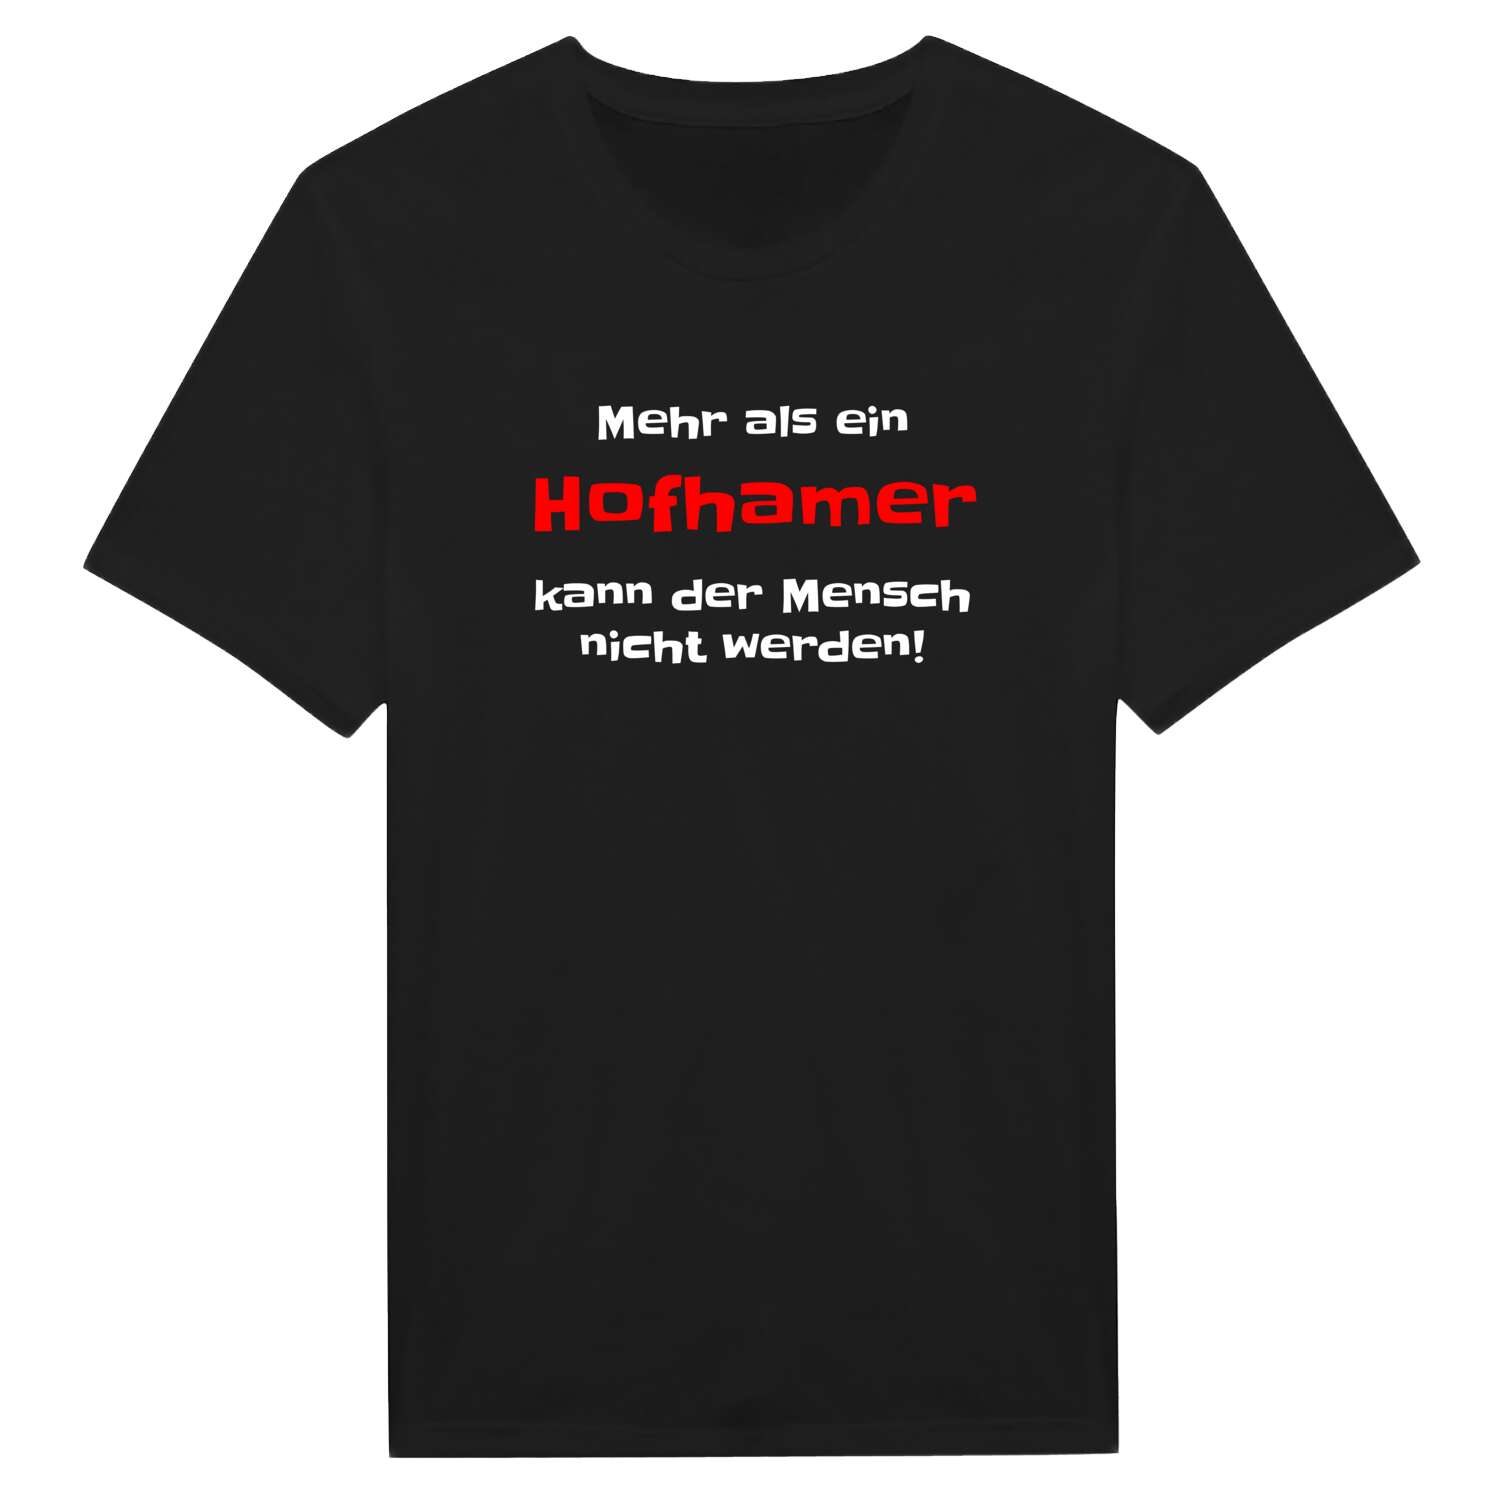 Hofham T-Shirt »Mehr als ein«